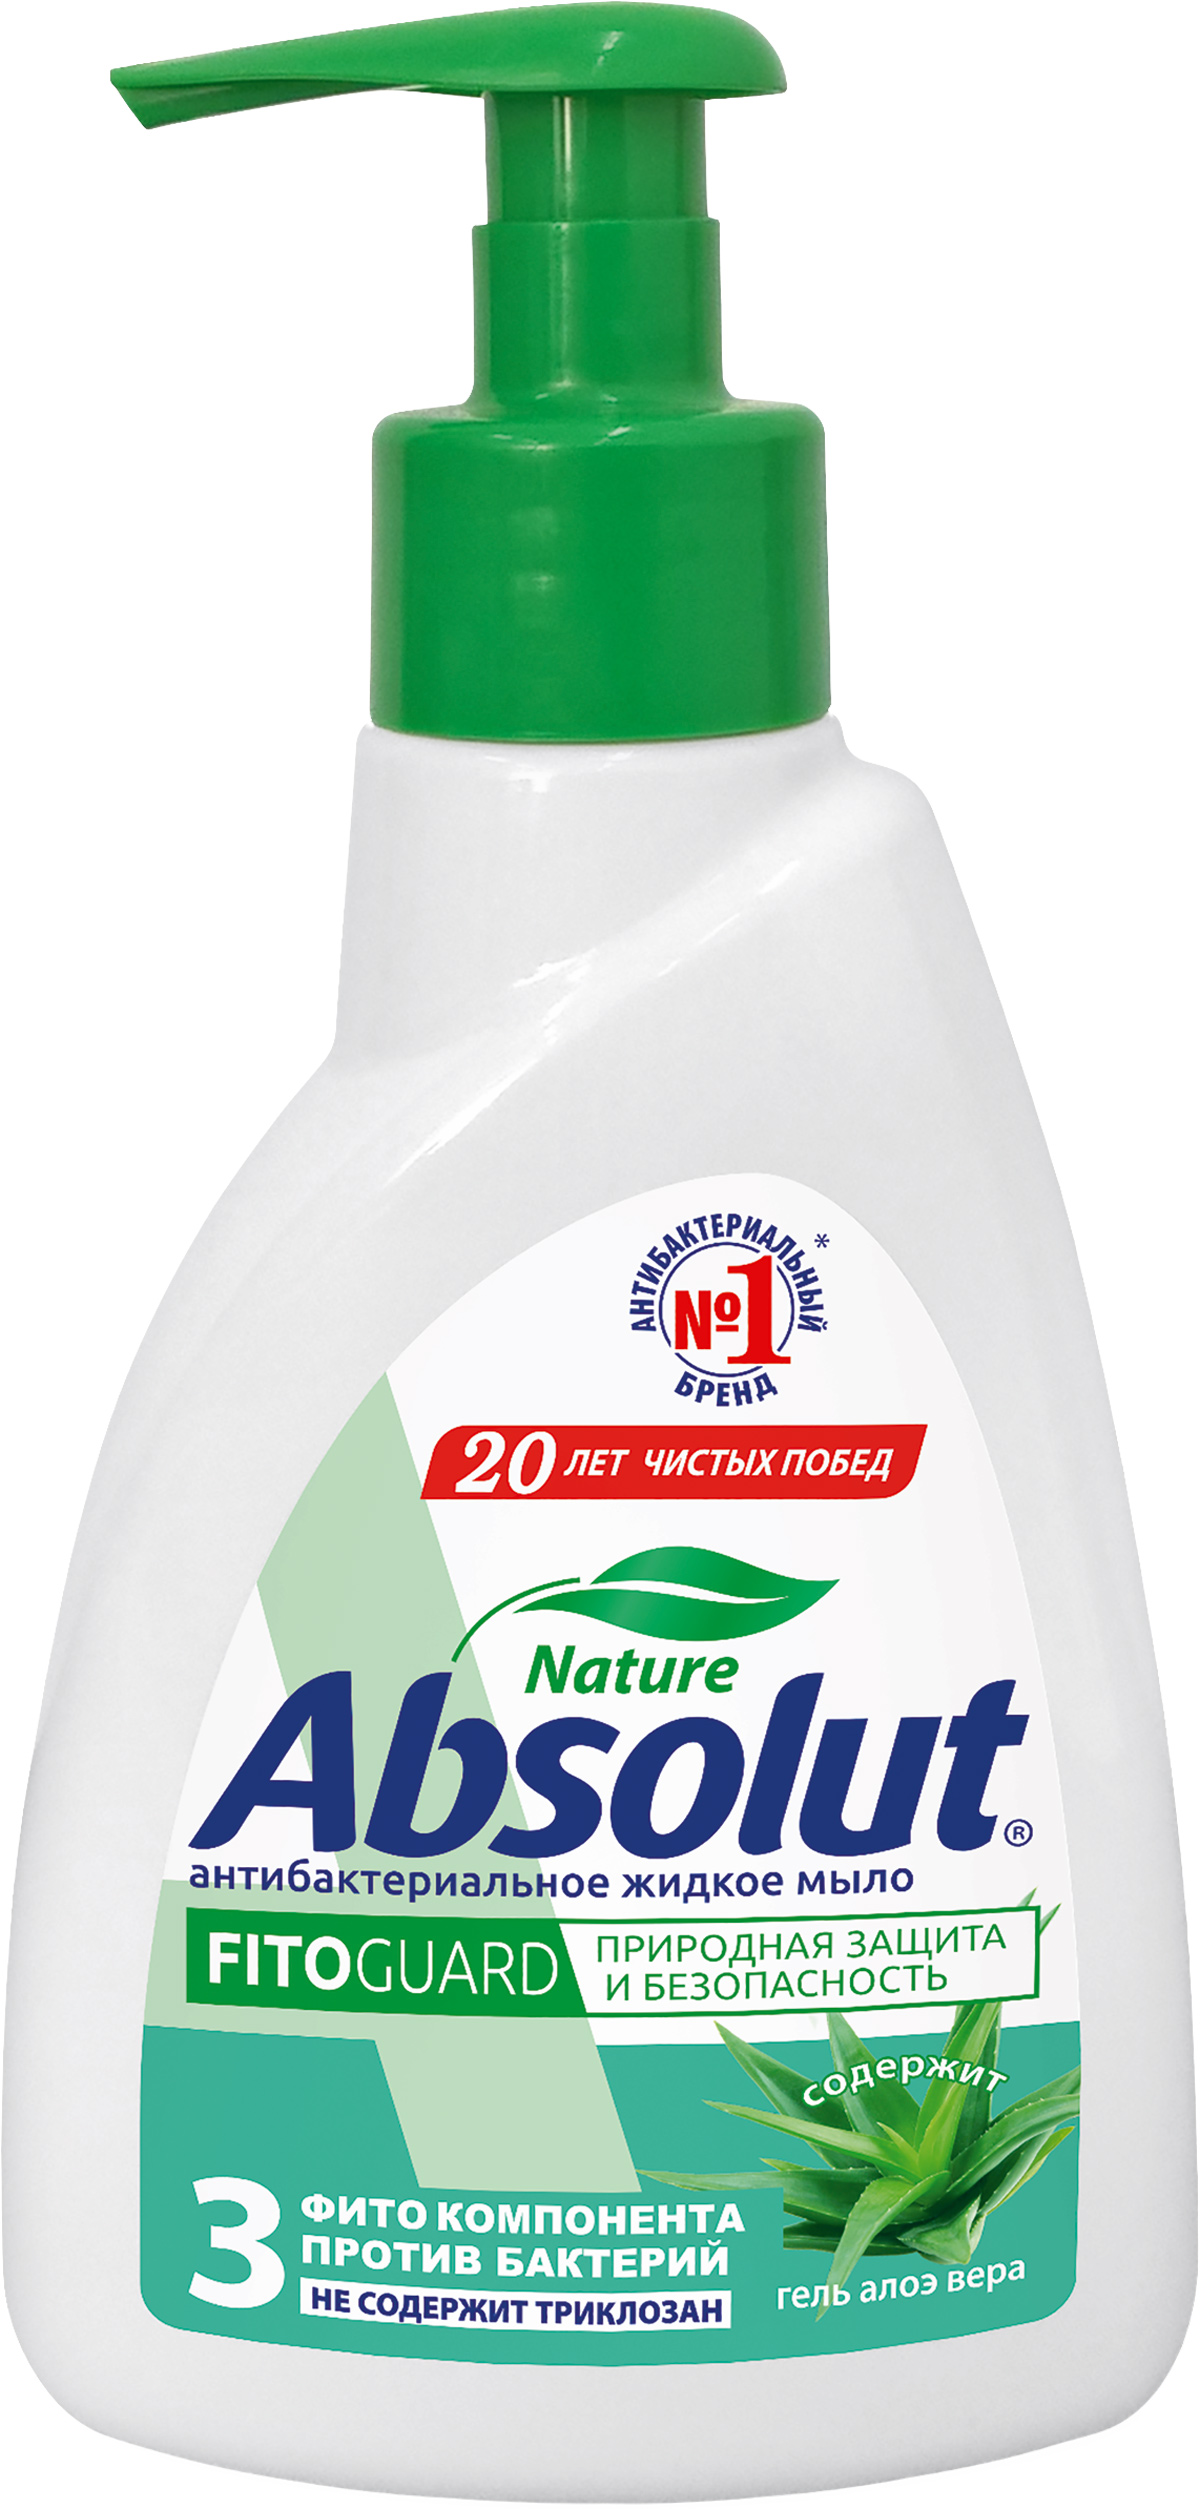 Жидкое мыло Абсолют Алоэ 250 гр мыло жидкое для рук absolut nature fitoguard антибактериальное с алоэ вера 500 мл